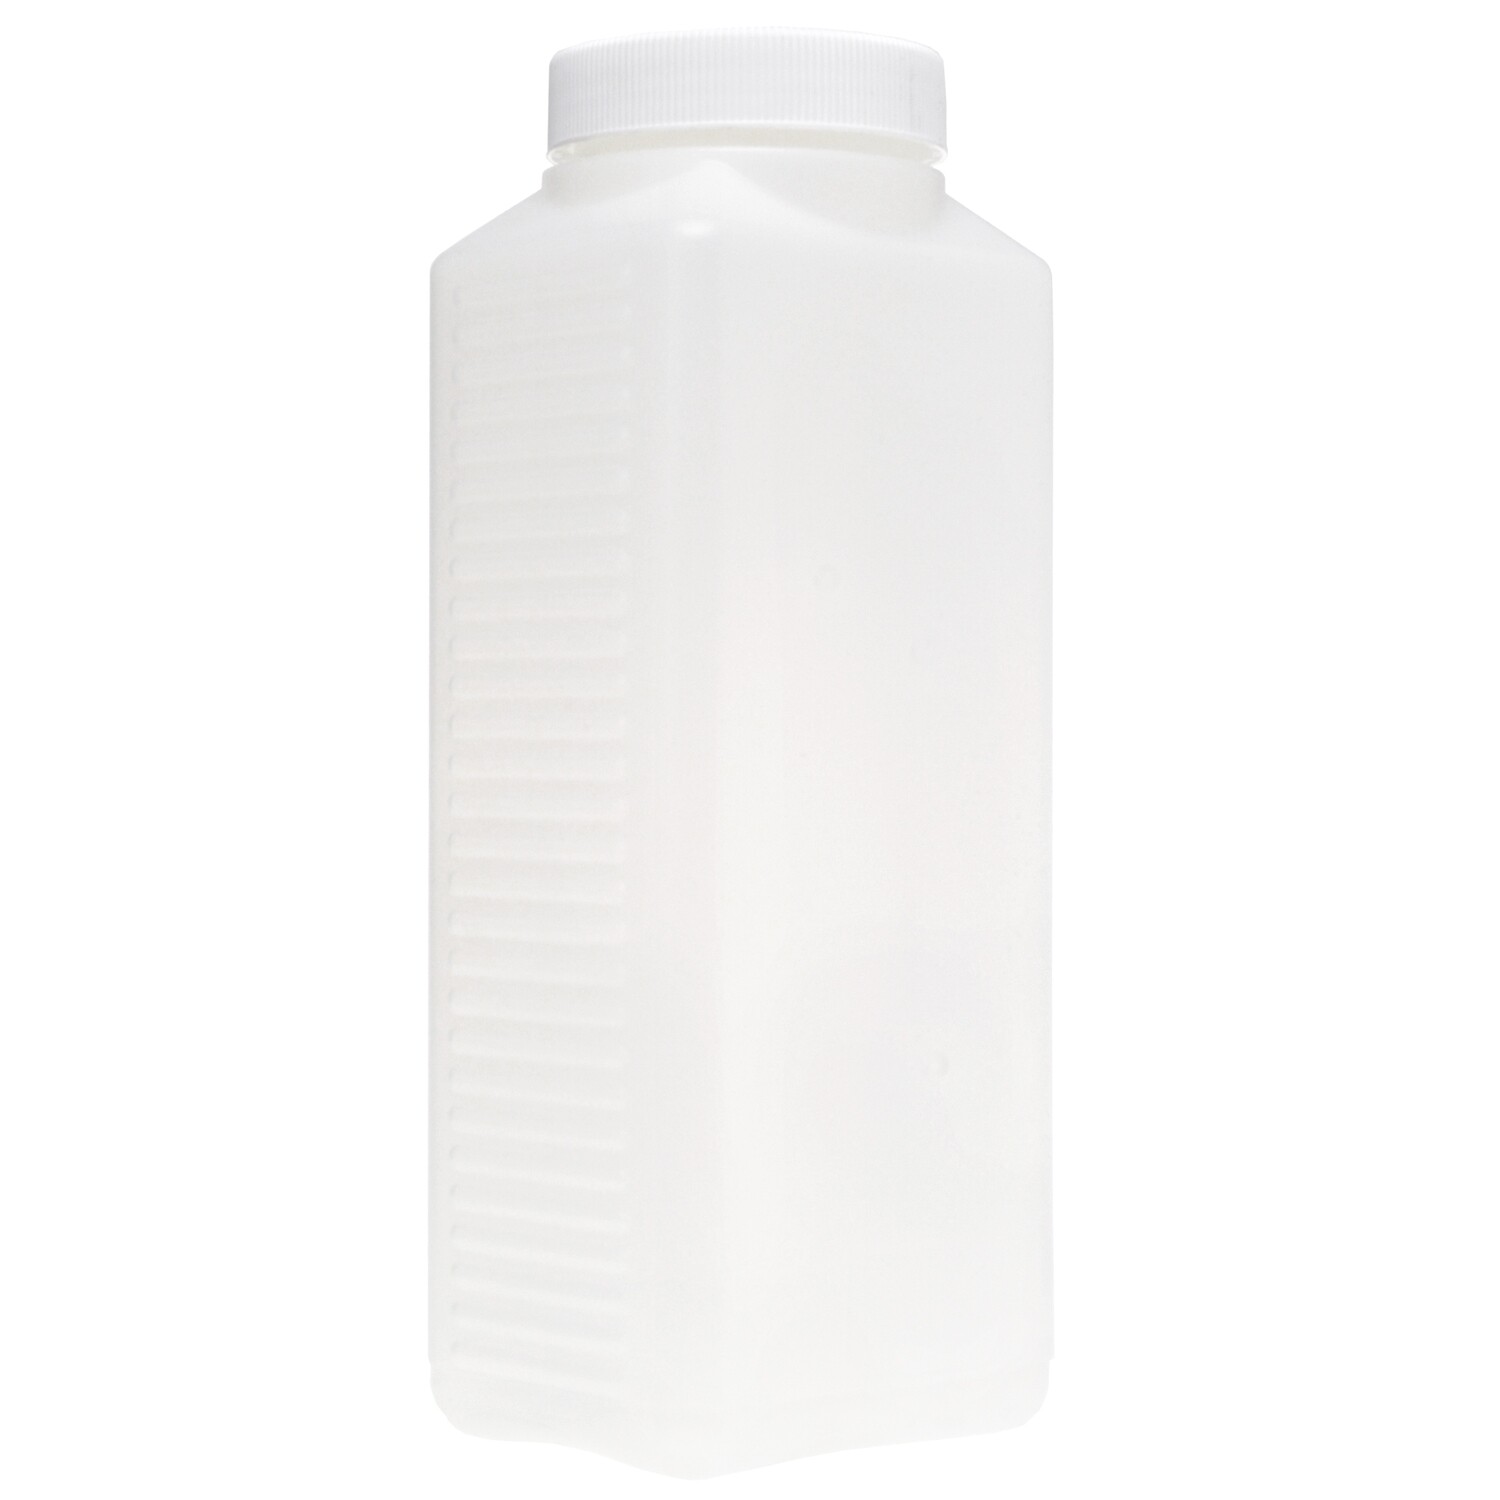 Peva Laborflasche weiss, 1 Liter